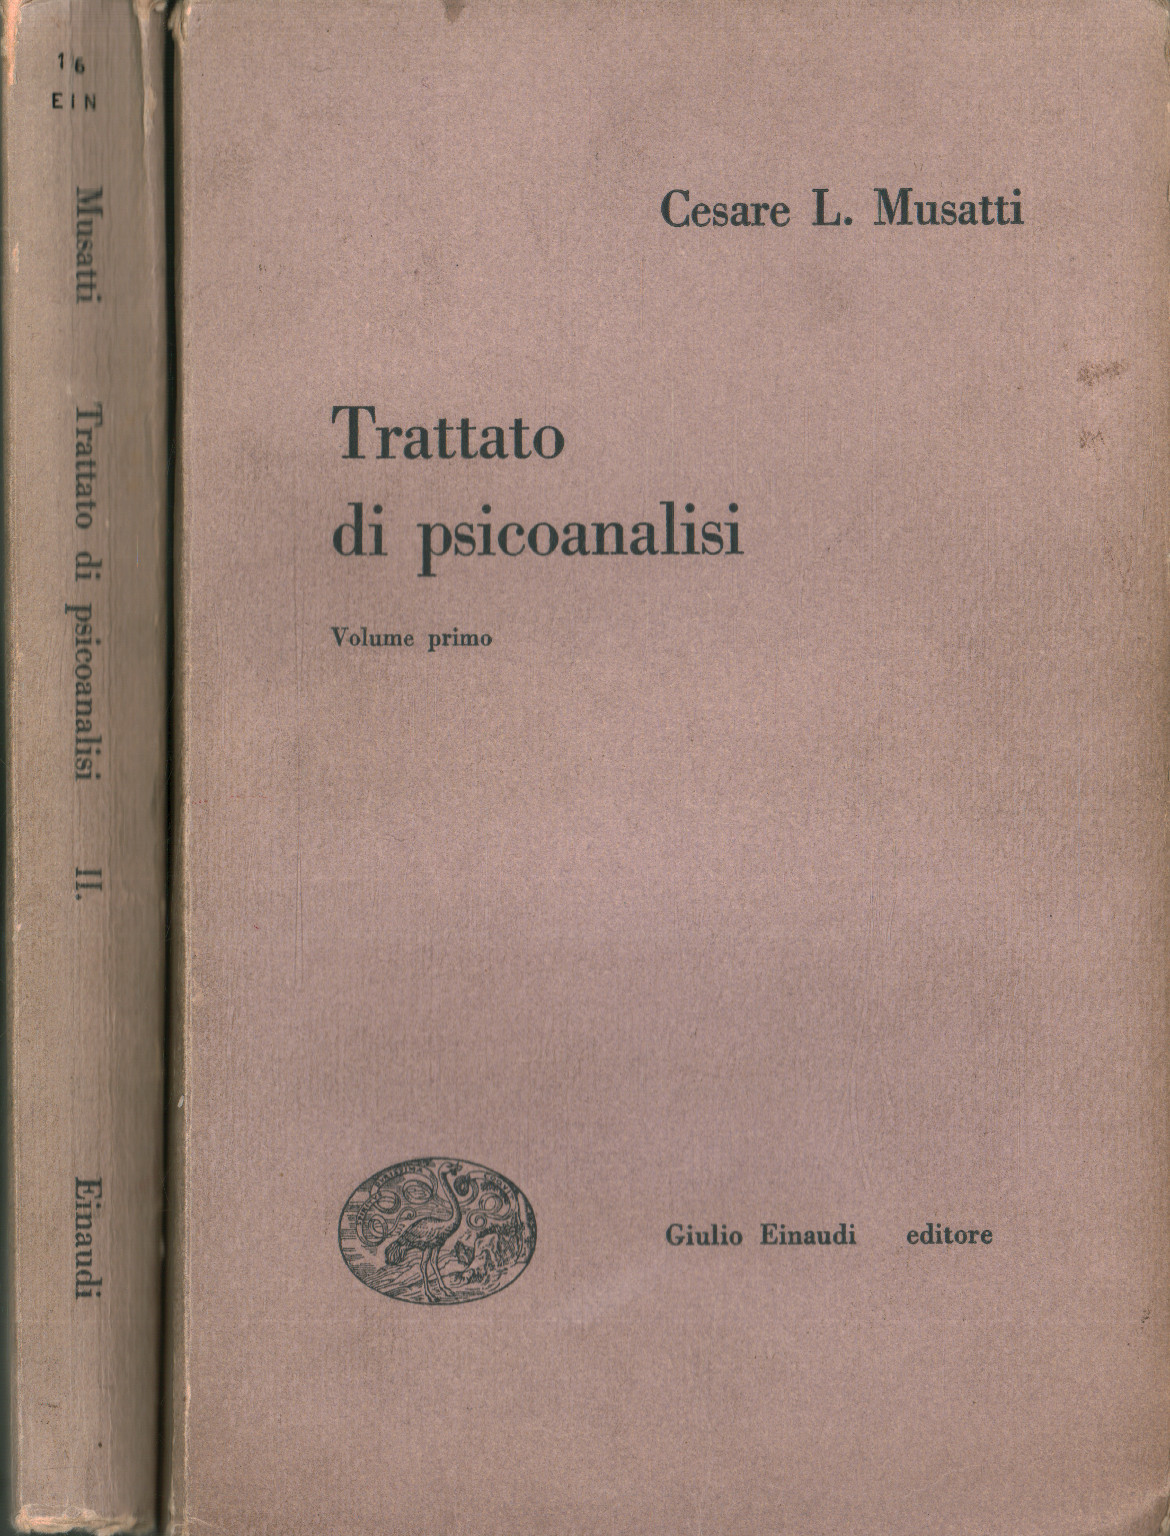 Treatise on psychoanalysis (2 Volumes)